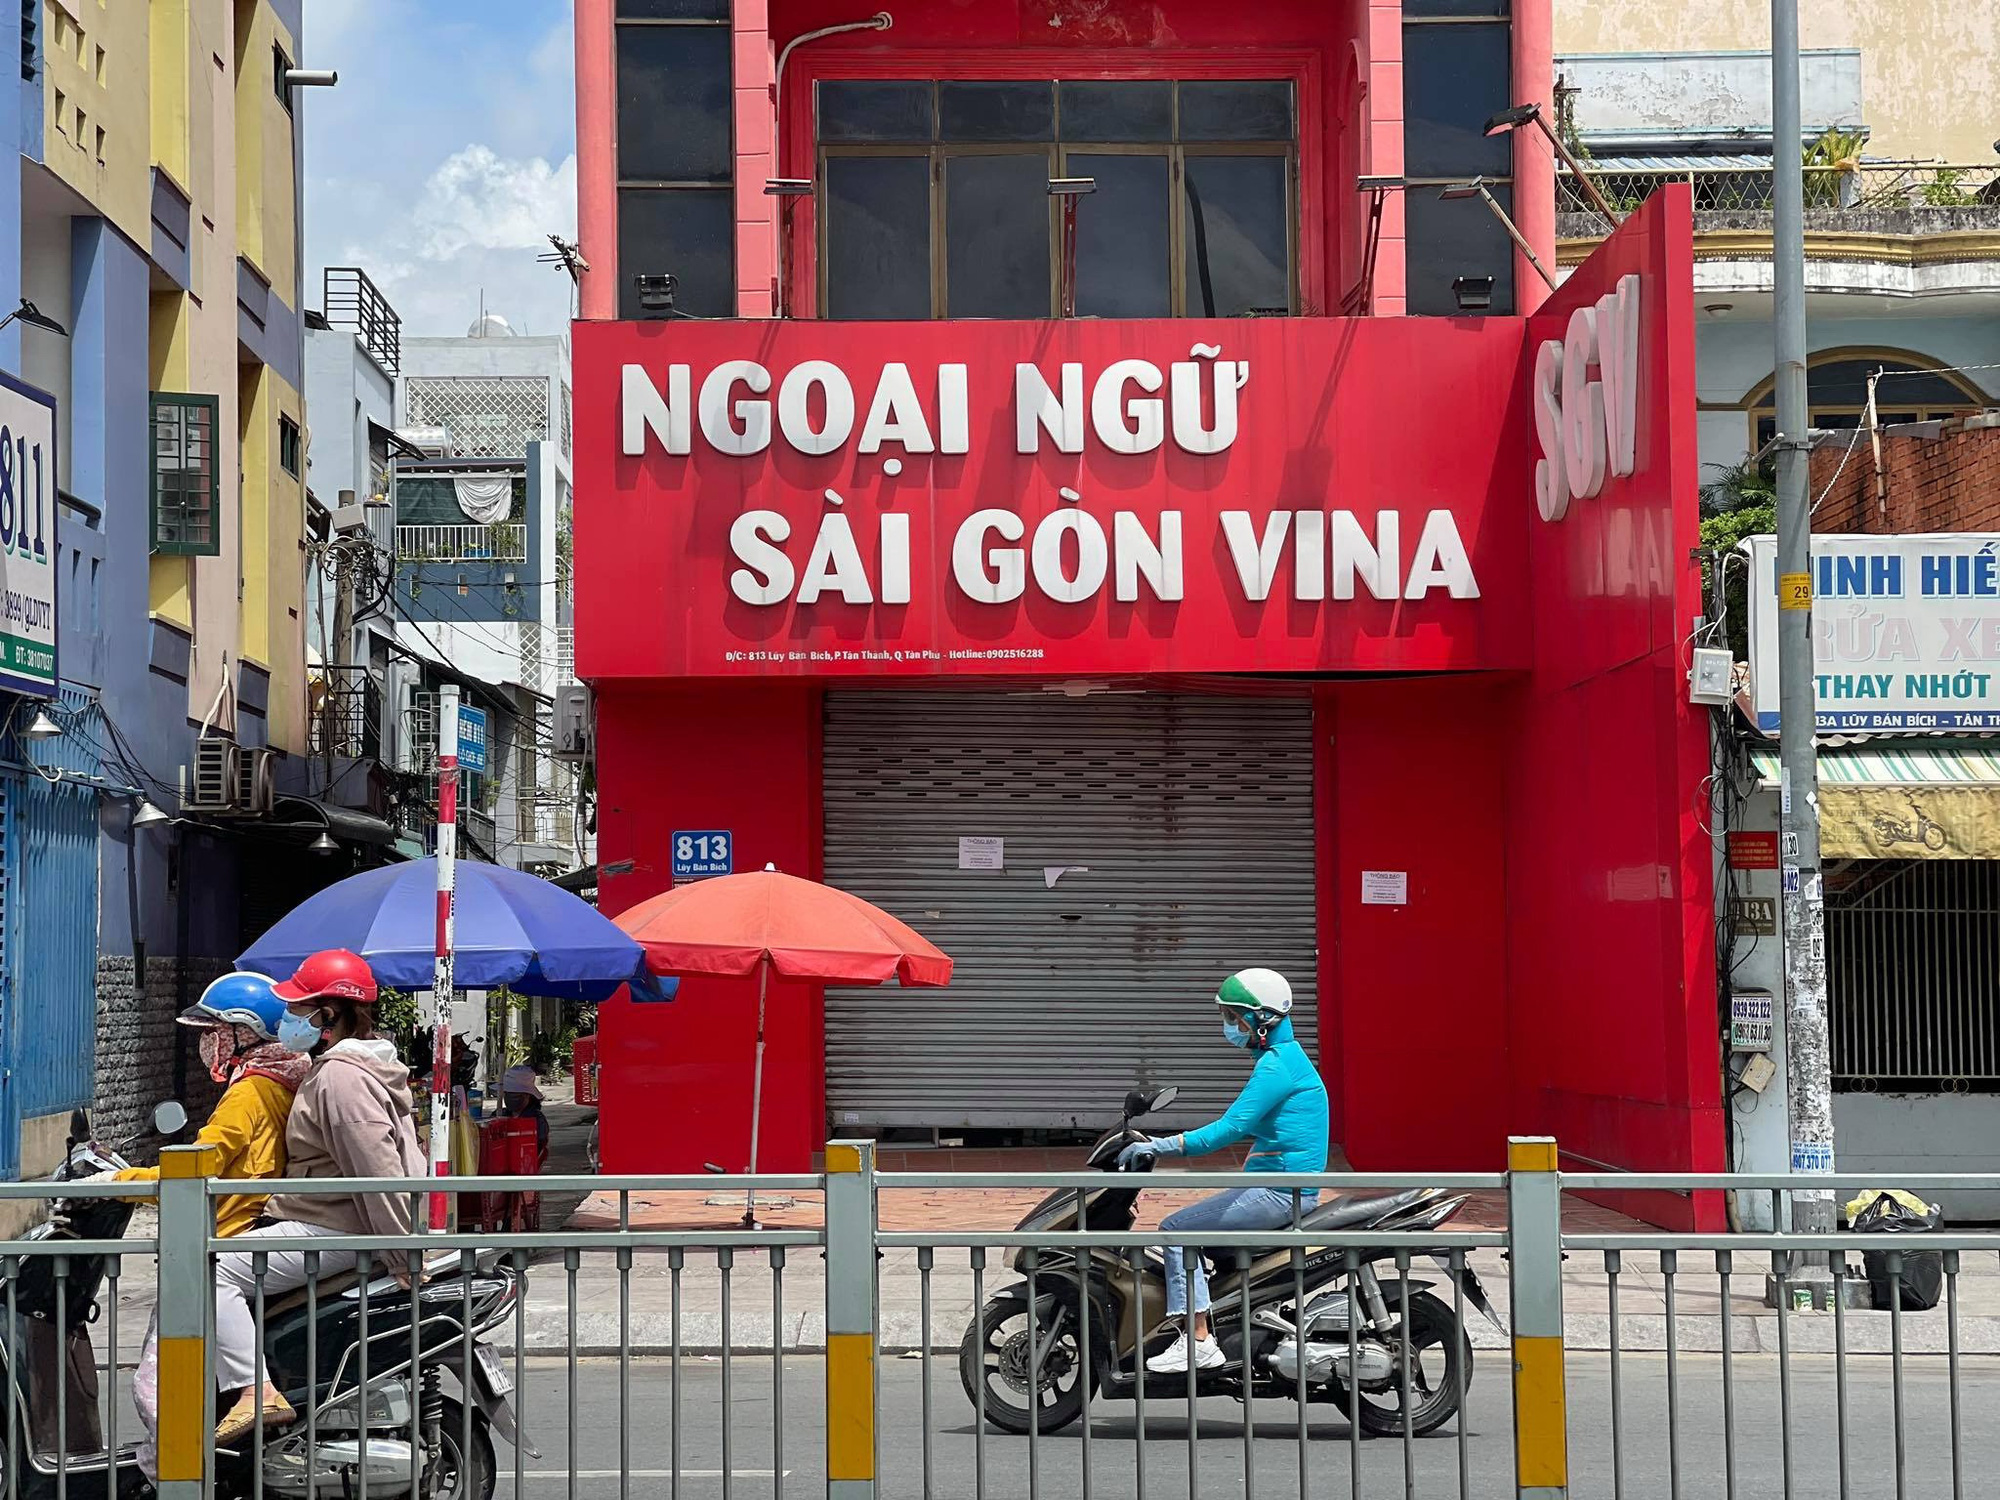 Trung tâm ngoại ngữ Sài Gòn Vina nợ lương giáo viên gần 2 năm - Ảnh 1.